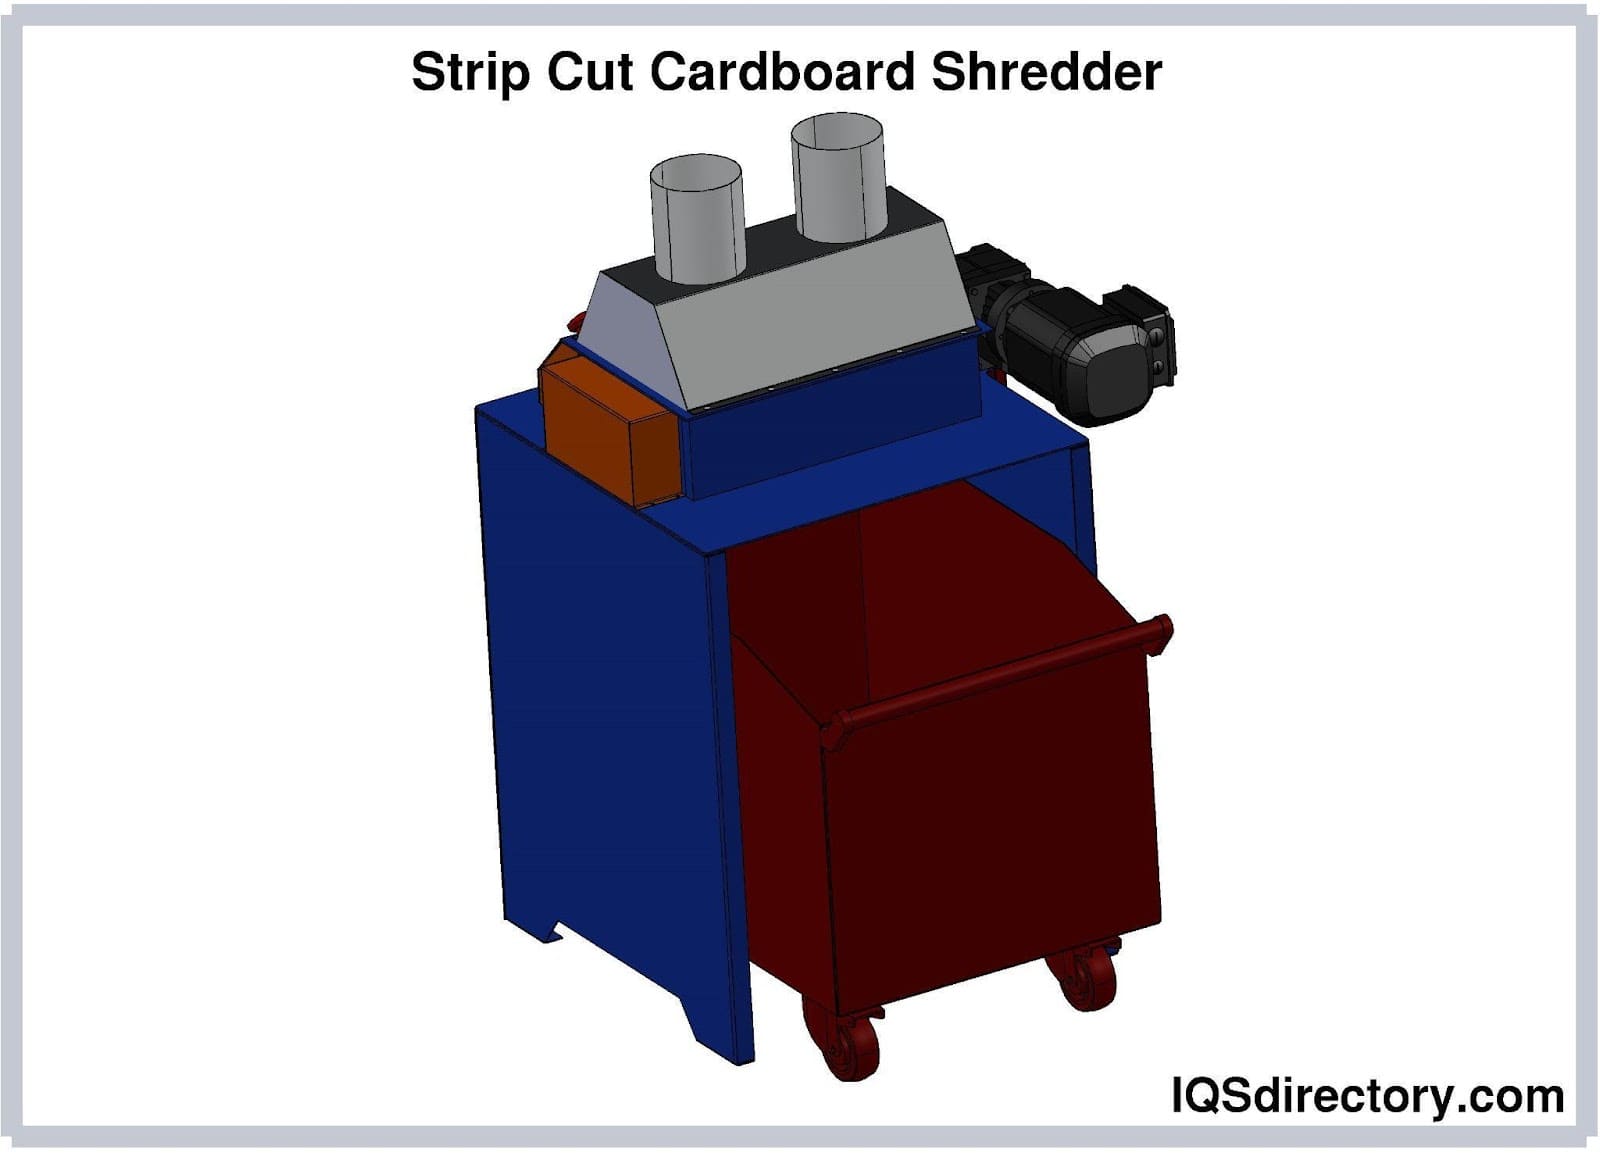 https://www.iqsdirectory.com/articles/shredder/shredding-machine/strip-cut-cardboard-shredder.jpg